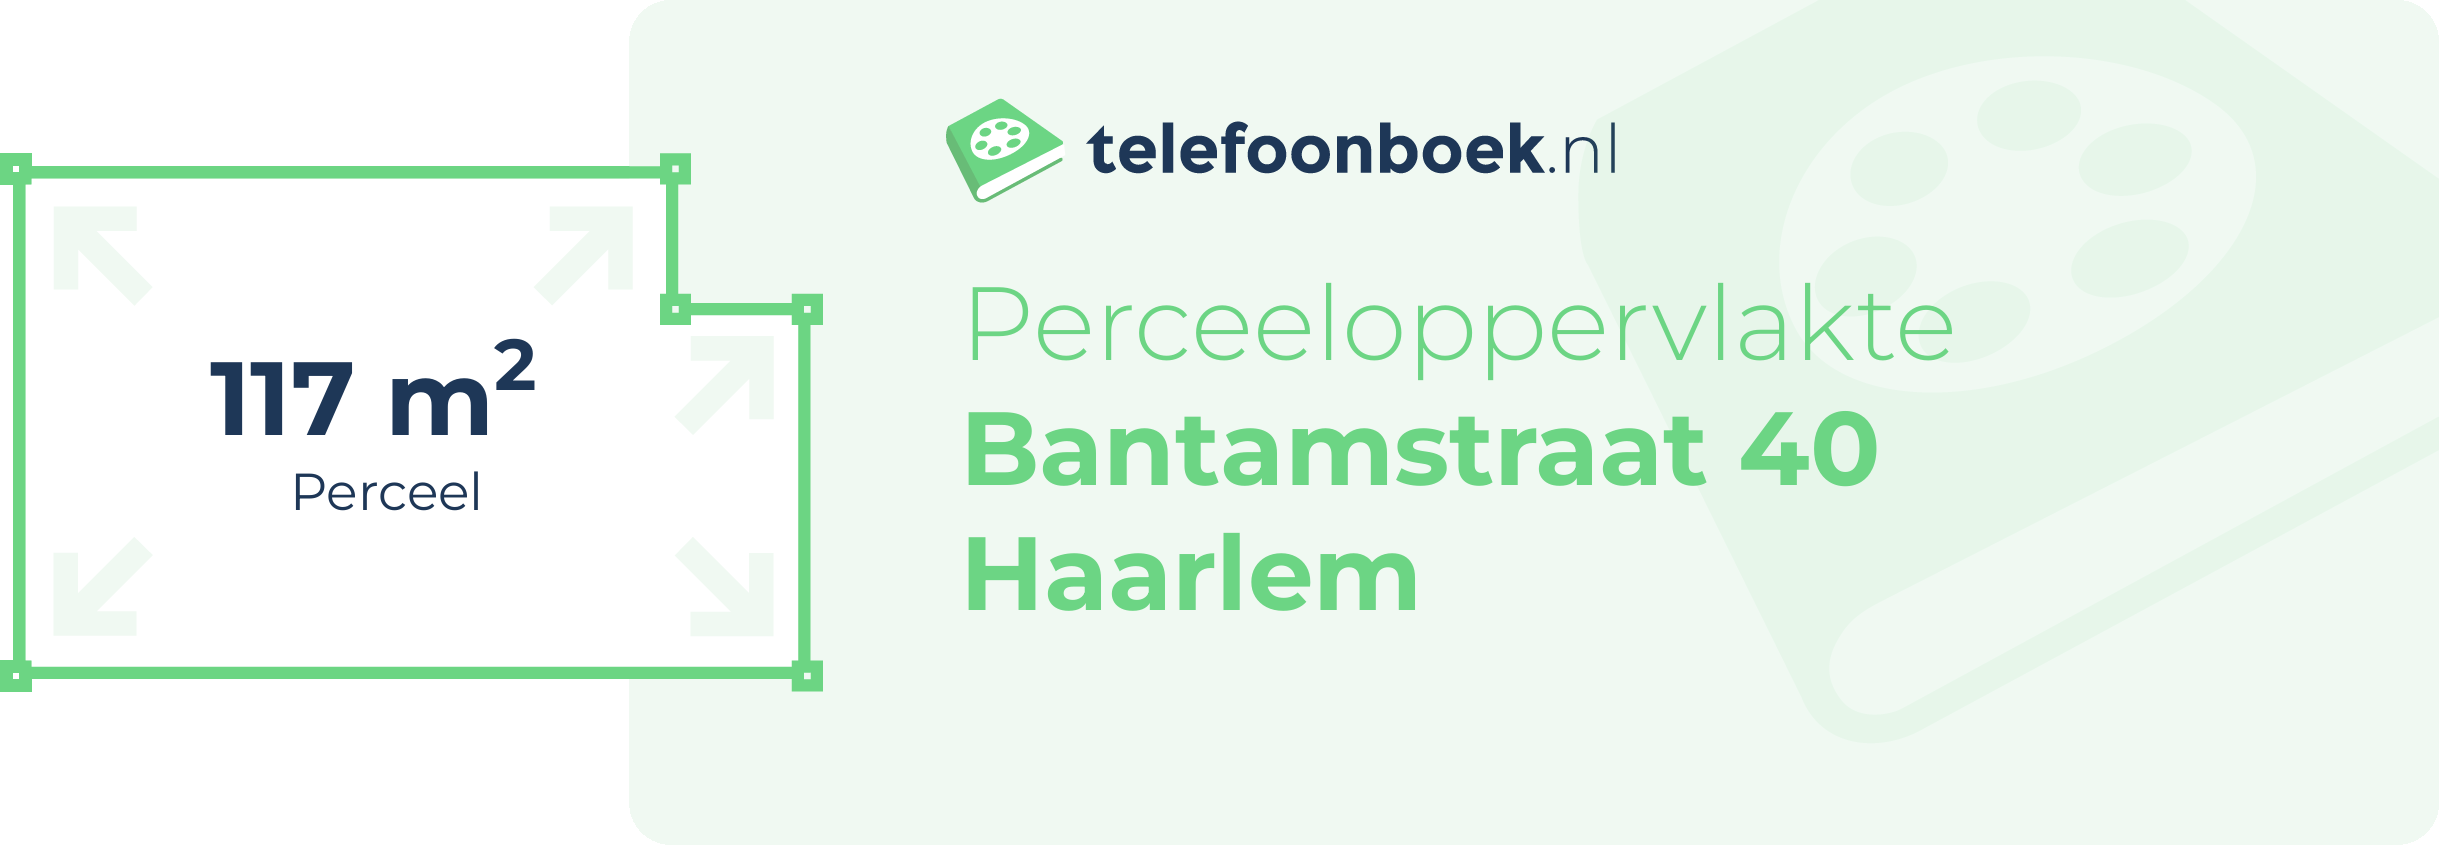 Perceeloppervlakte Bantamstraat 40 Haarlem